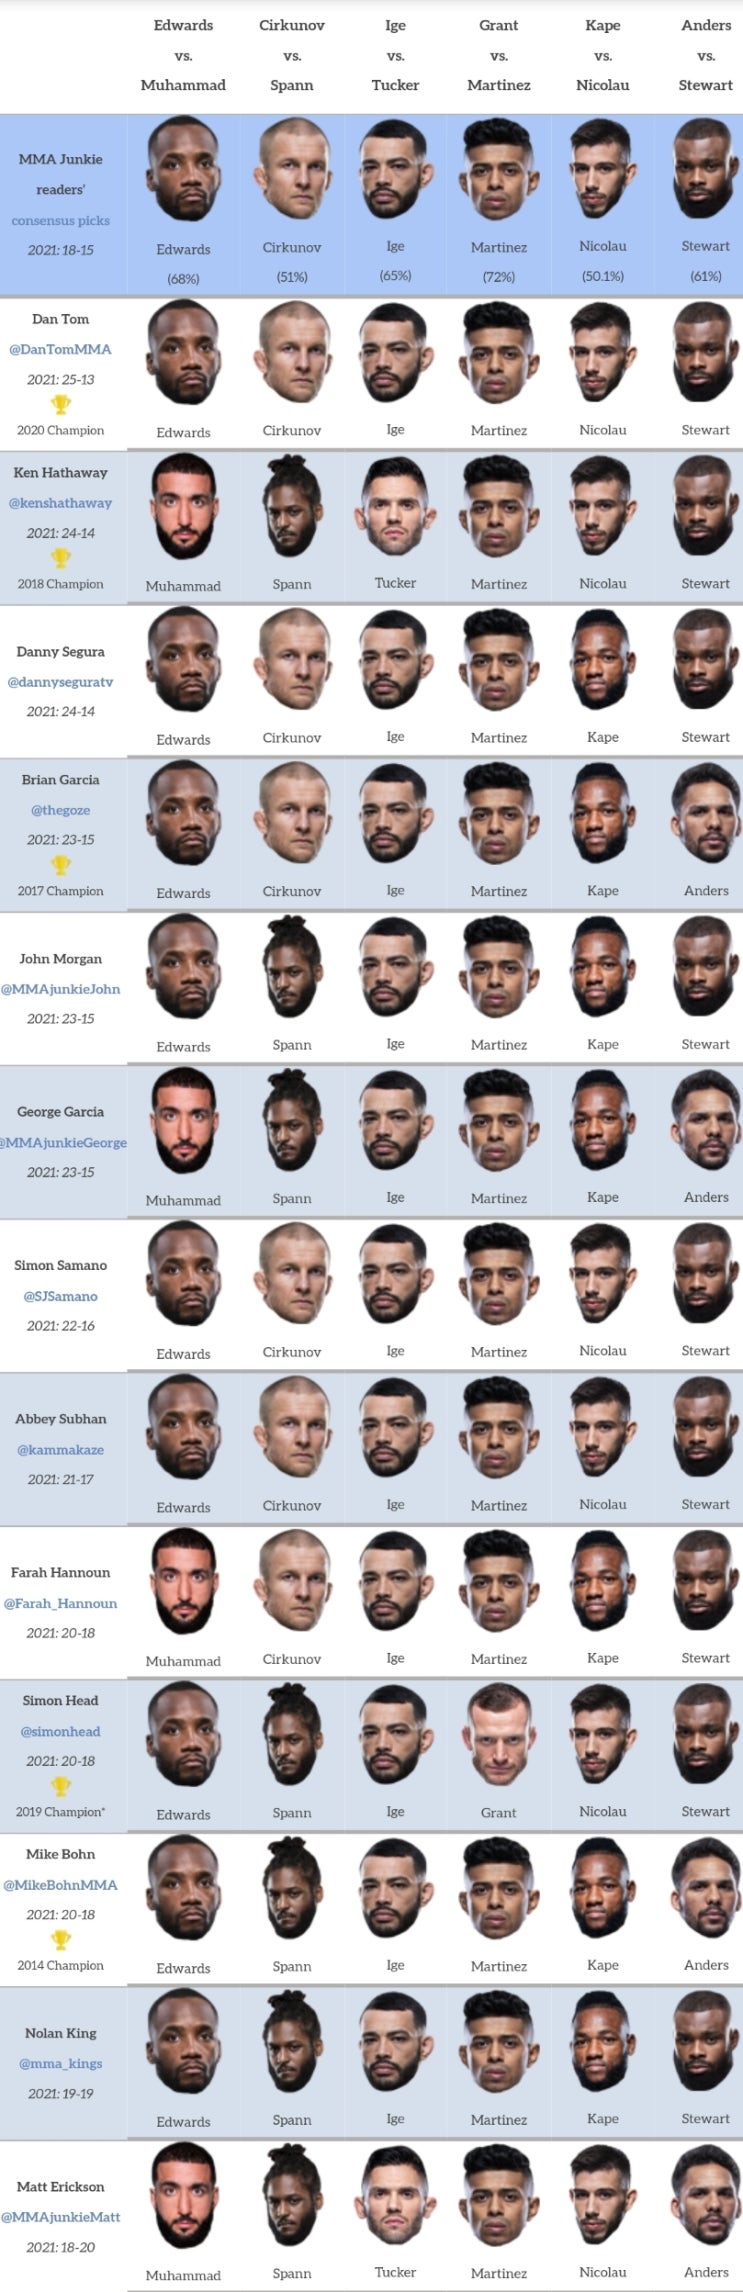 UFC 베가스 21: 에드워즈 vs 무하메드 프리뷰(미디어 예상 및 배당률)